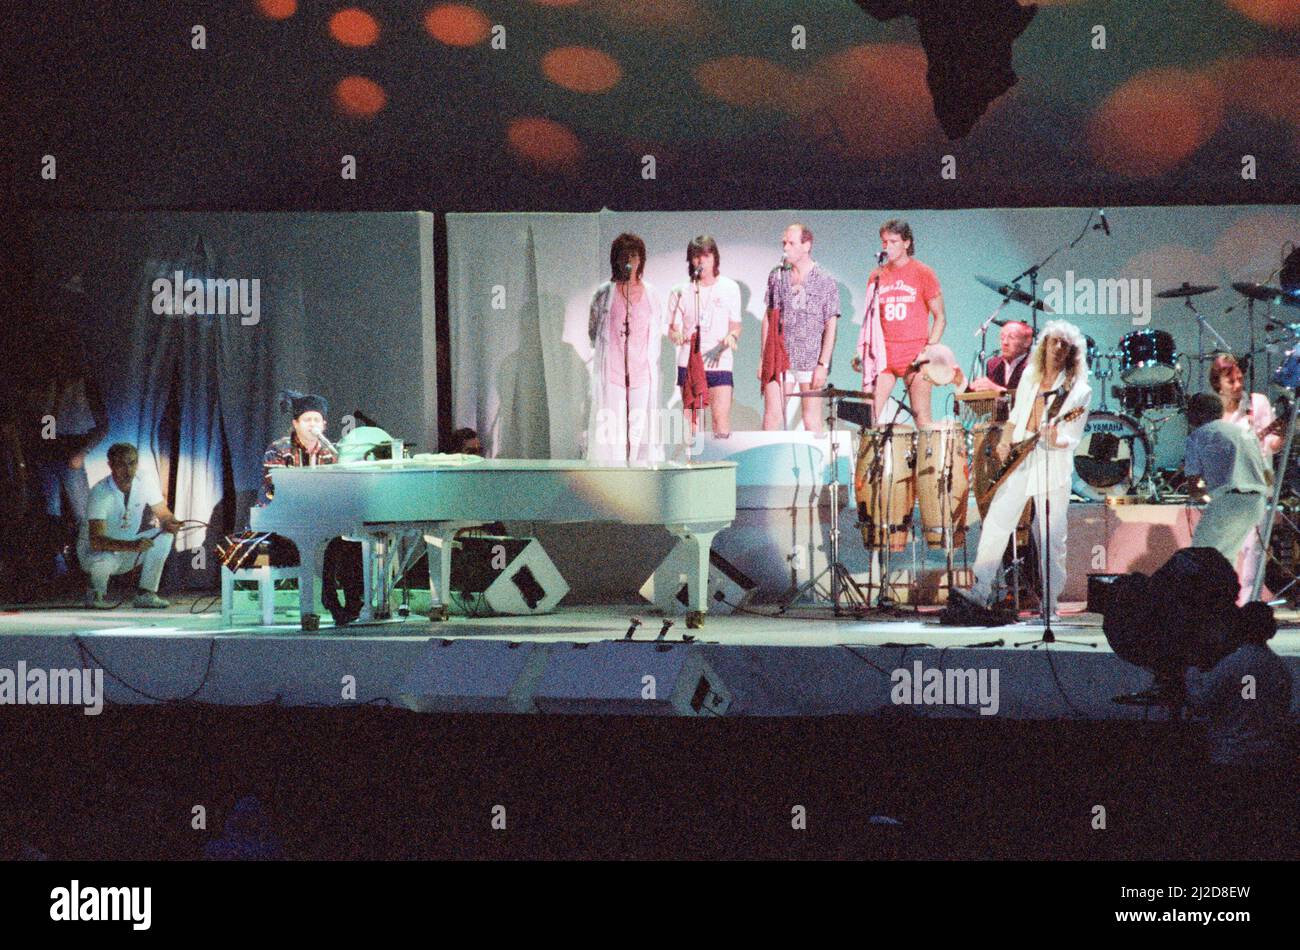 Concert Live Aid au stade Wembley, Londres, pour recueillir des fonds pour le secours de la famine éthiopienne en cours. Elton John se présentant. 13th juillet 1985. Banque D'Images